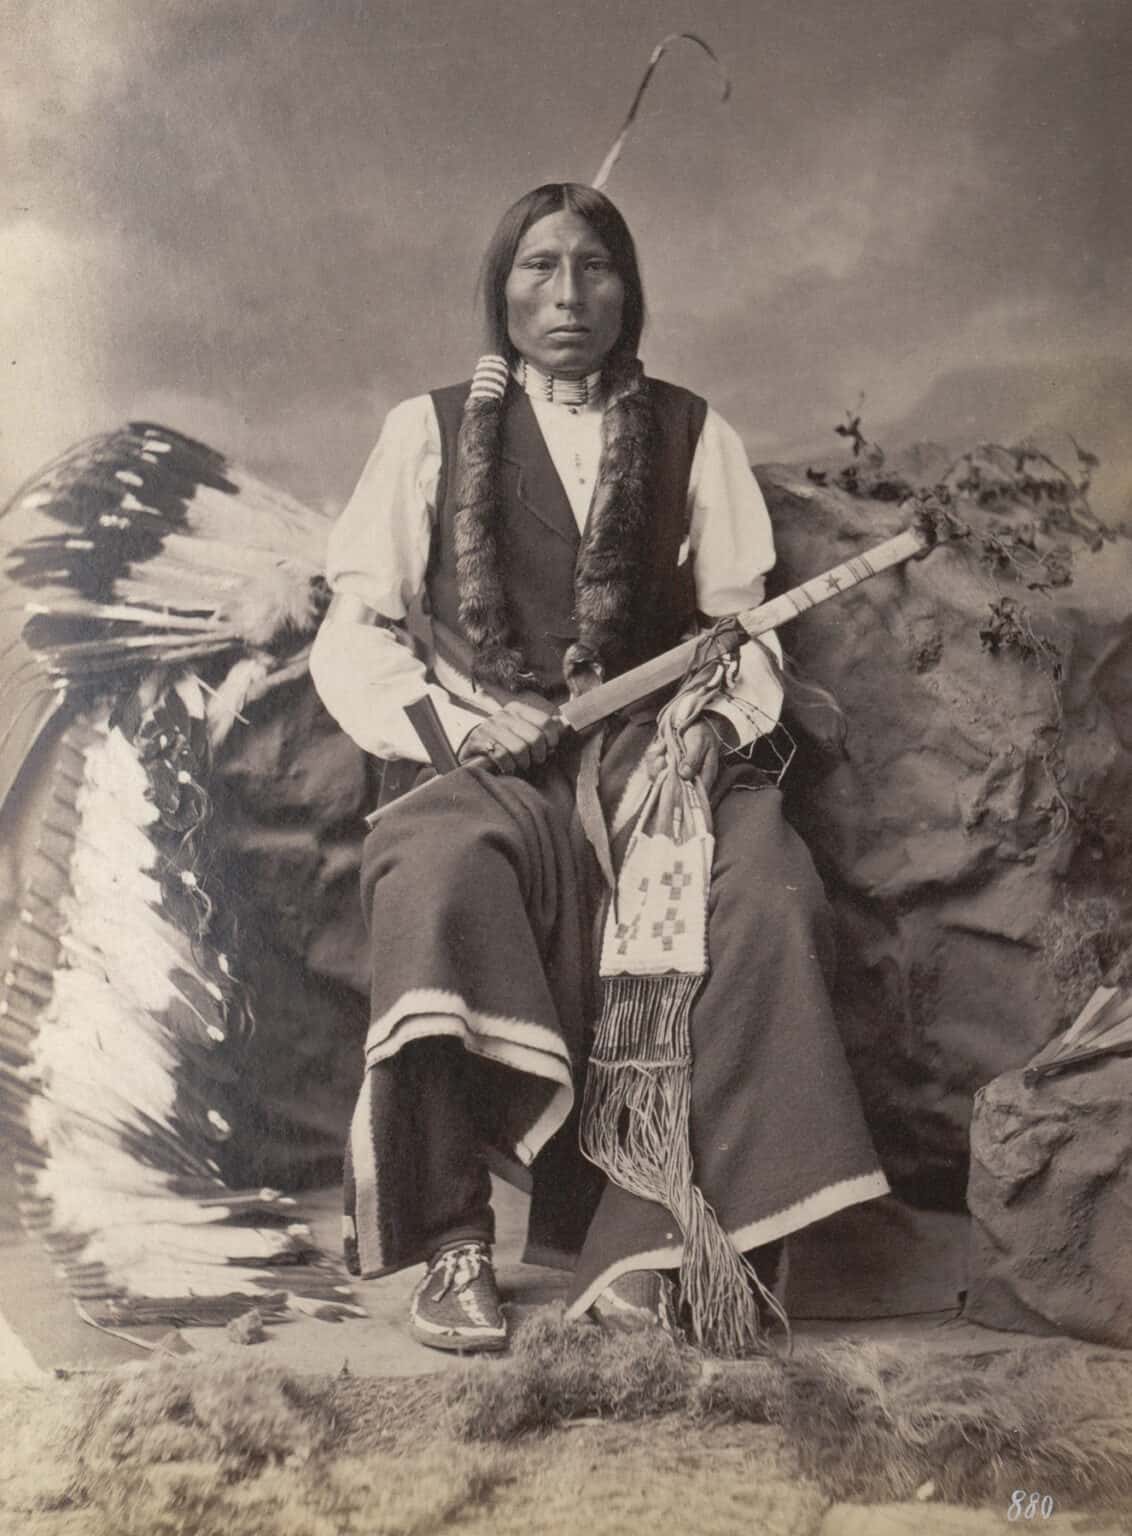 Tři medvědi, oglalský Lakota na fotografii z roku 1877. Jeho legíny jsou vyrobeny z vlněné látky s bílým neobarveným okrajem, stejně jako jako jeho přikrývka na kolenou.